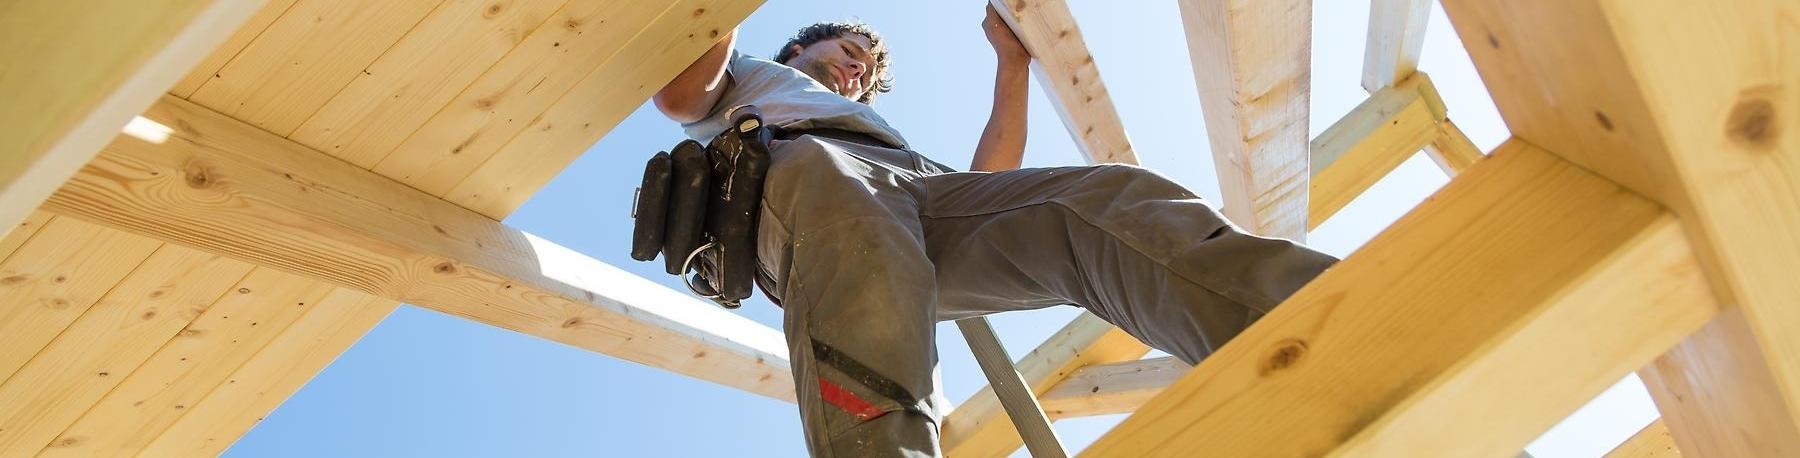 Byggarbetare går på reglar på bygge.